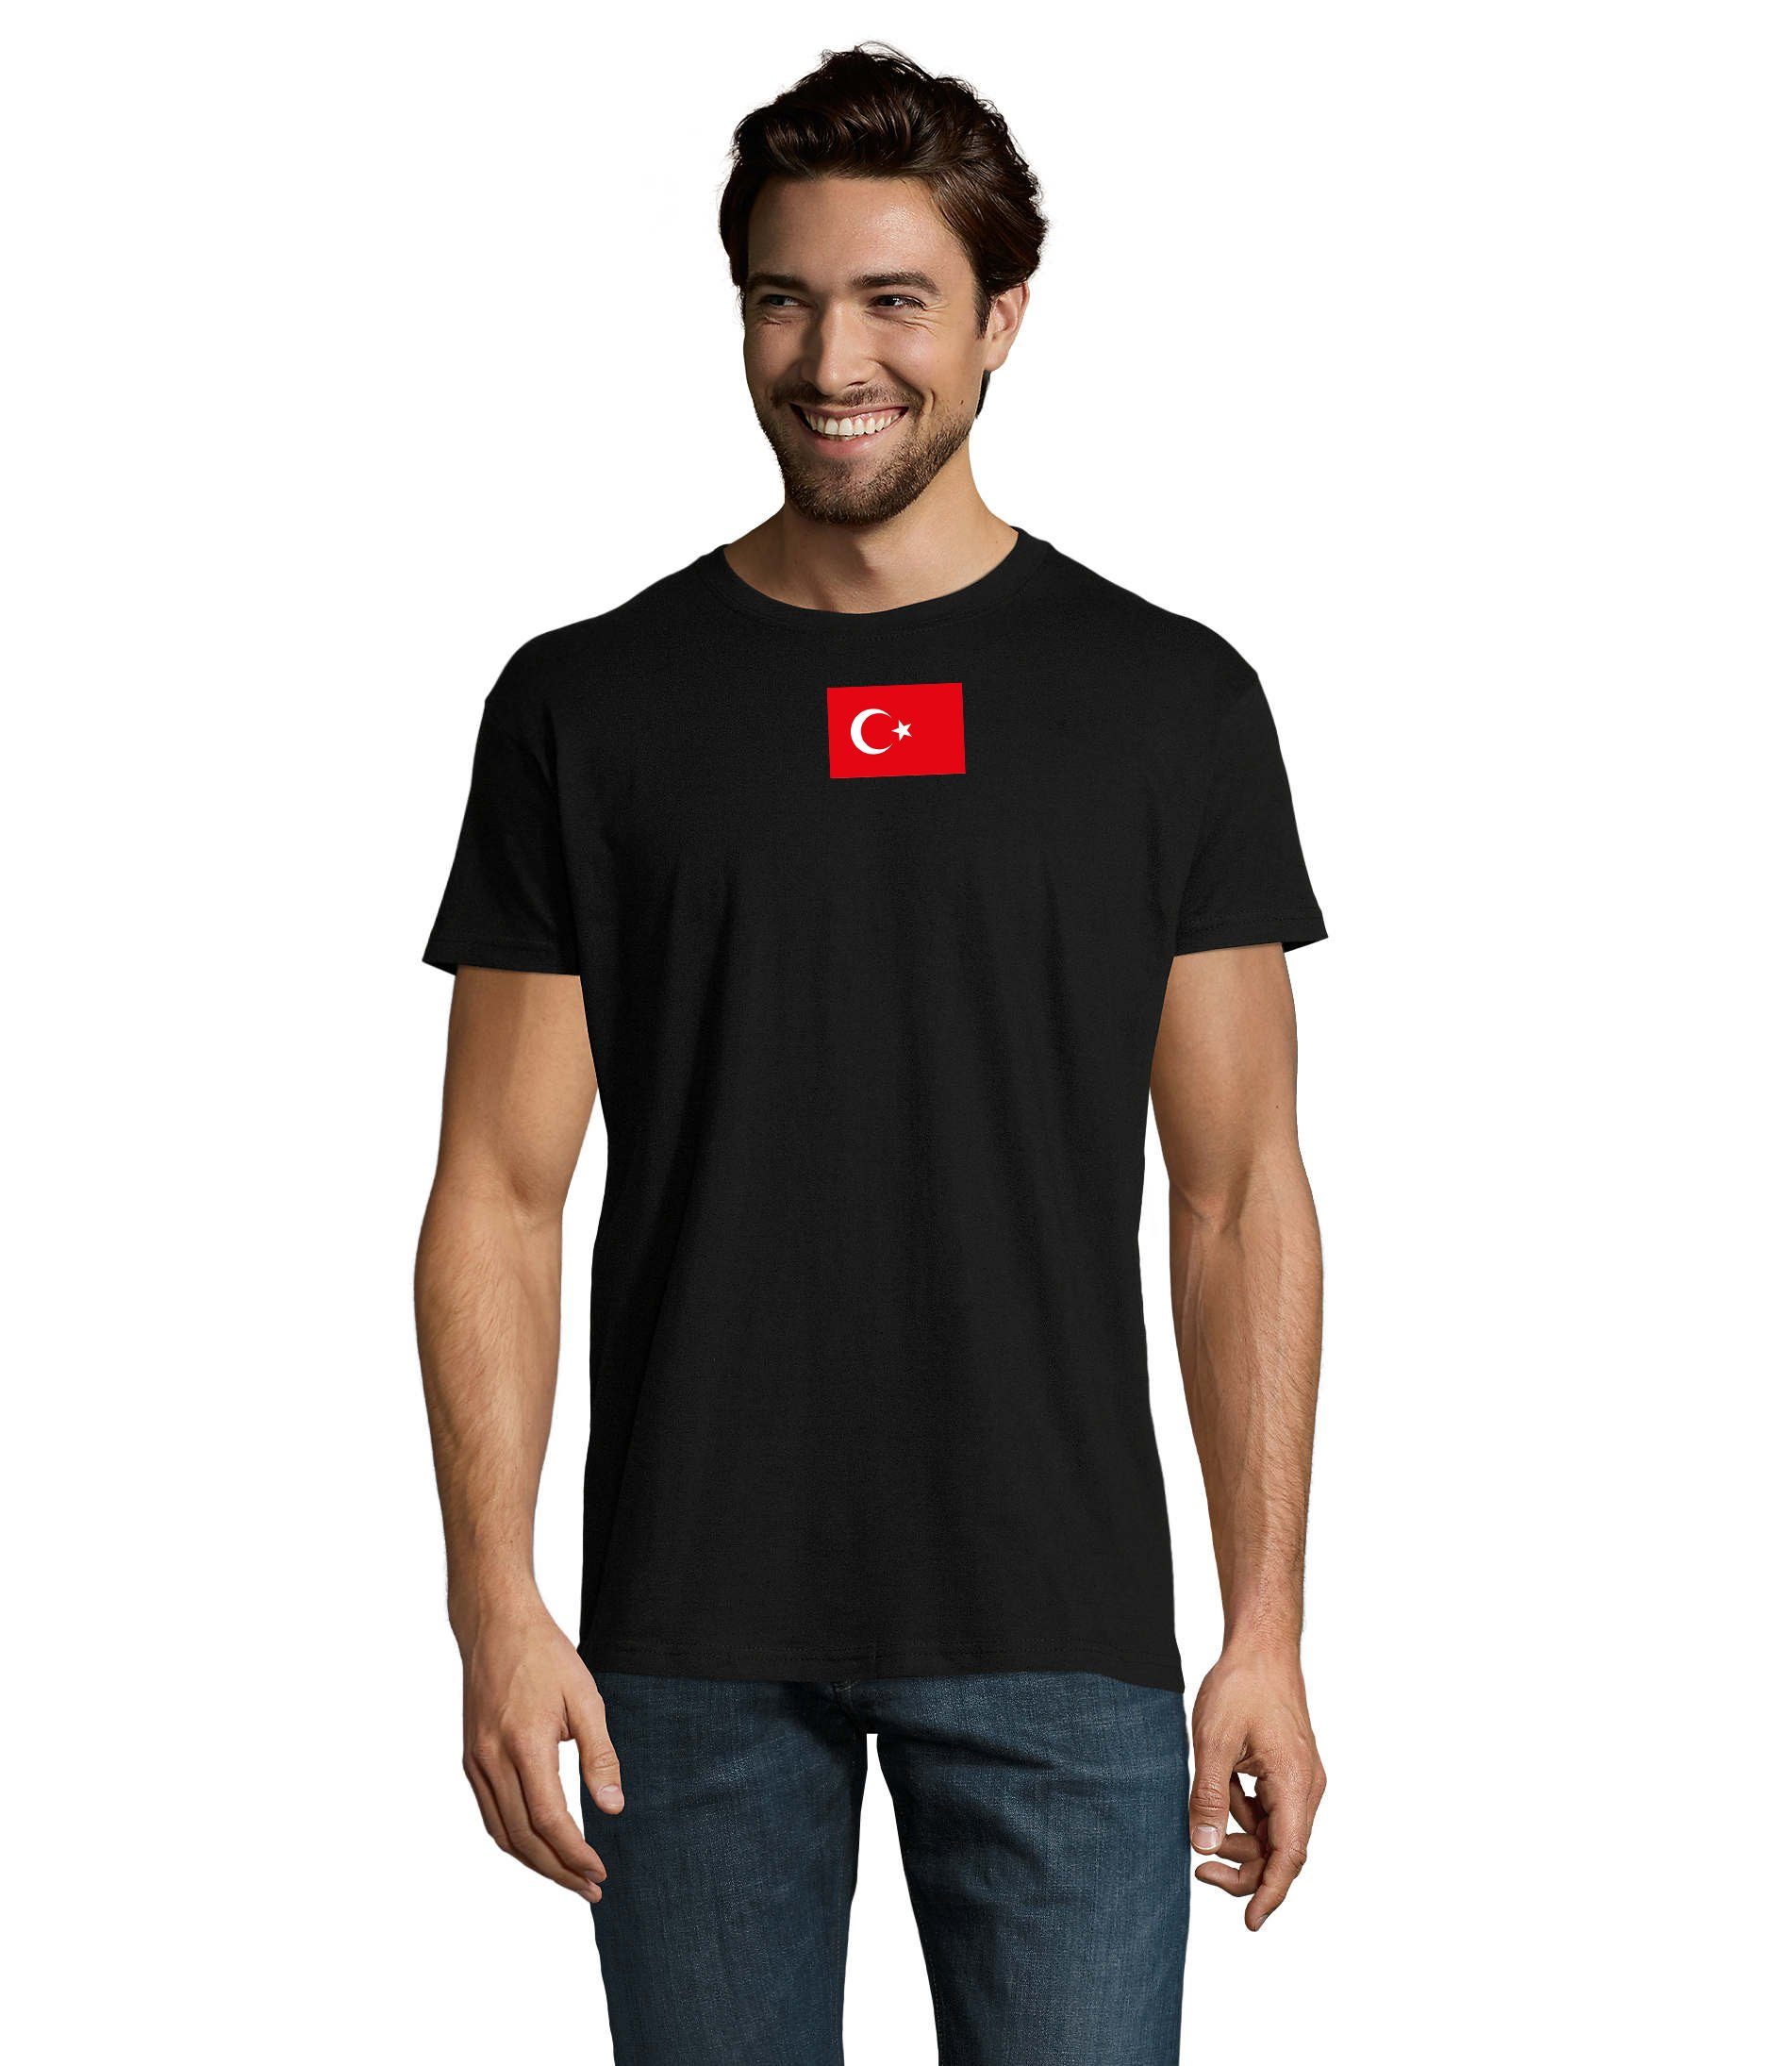 Blondie & Brownie T-Shirt Herren Türkei Turkey Ukraine USA Army Armee Nato Peace Air Force Schwarz